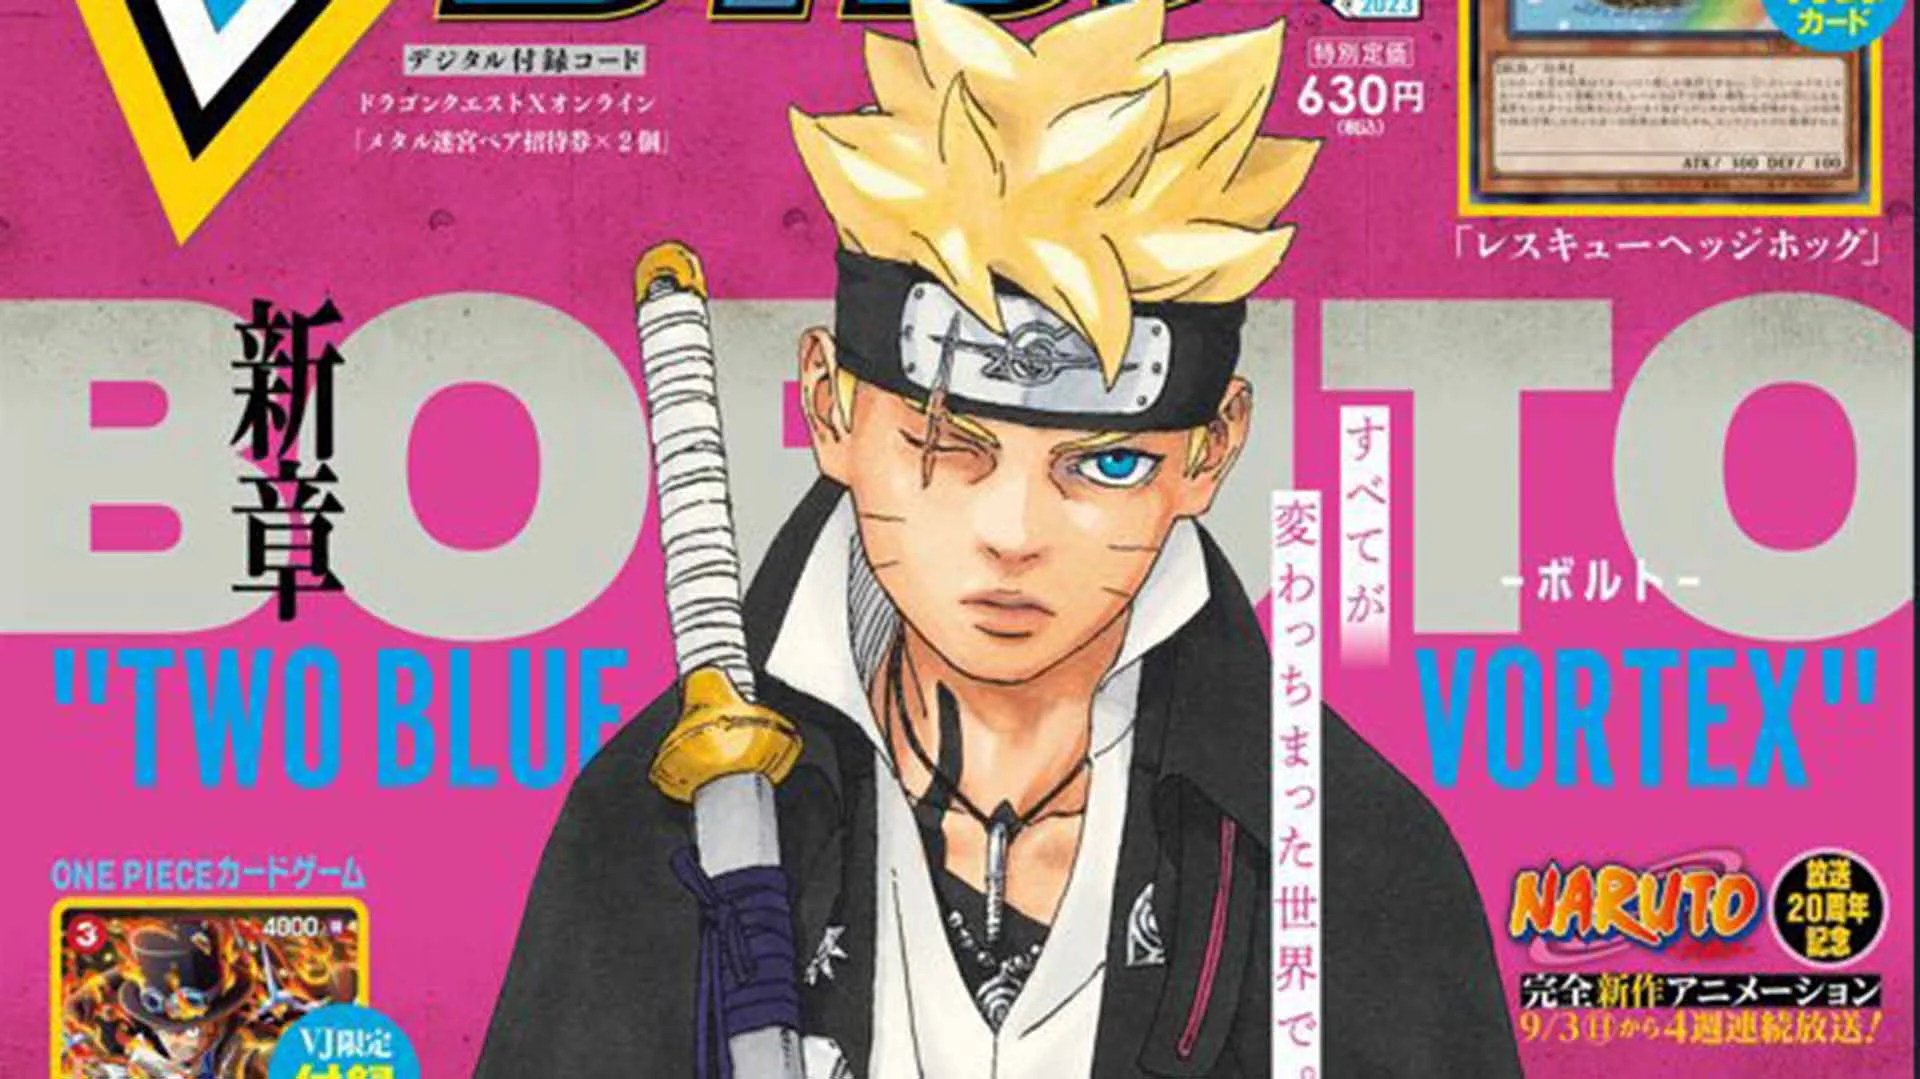 Boruto manga announces part 2 titled Boruto: Two Blue Vortex